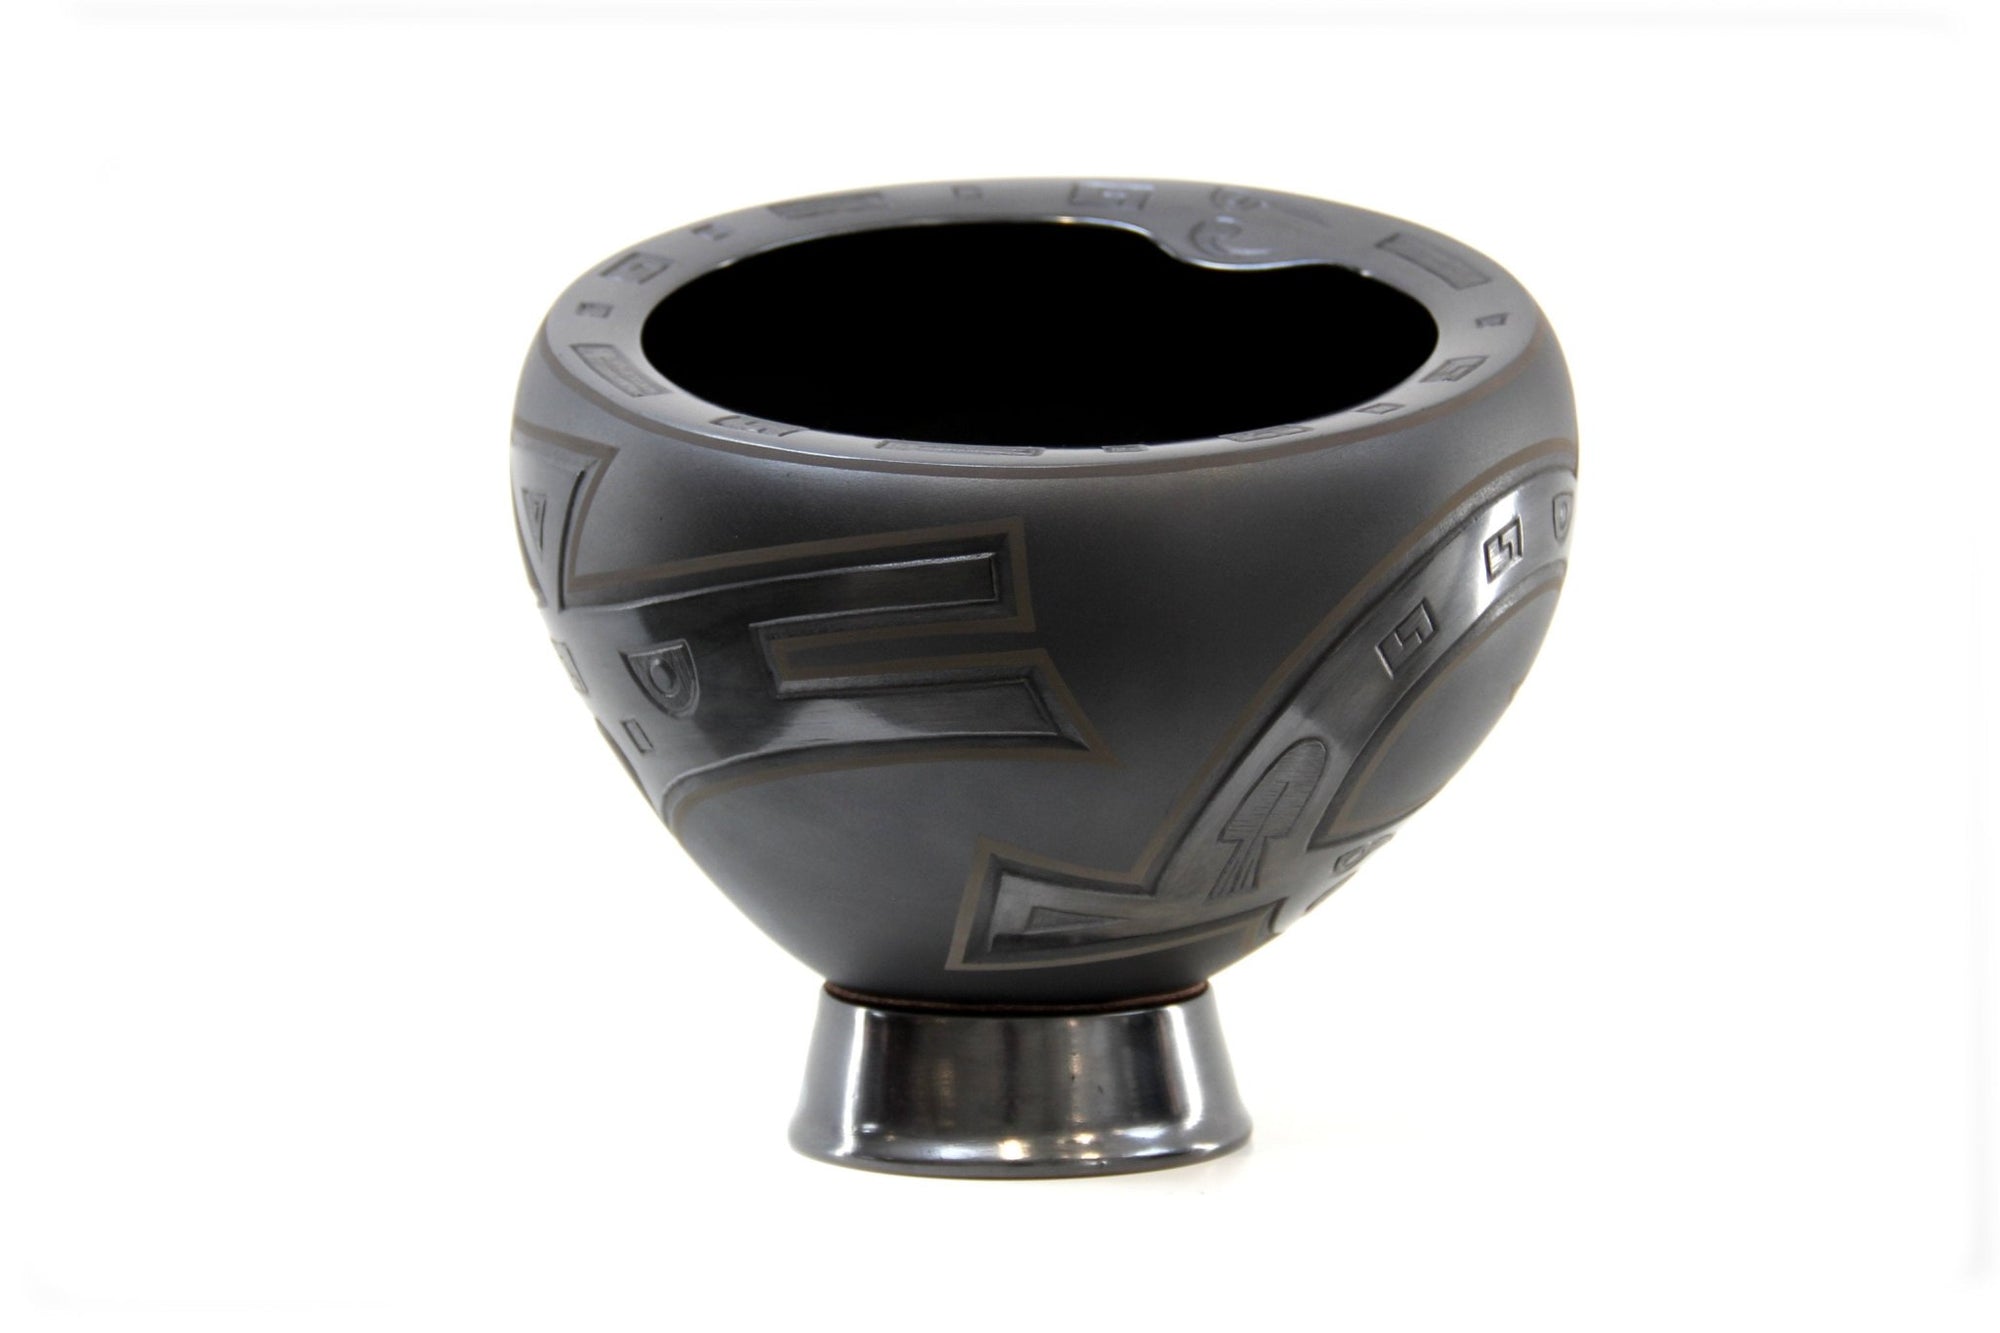 Céramique Mata Ortiz - Urne noire - Art Huichol - Marakame